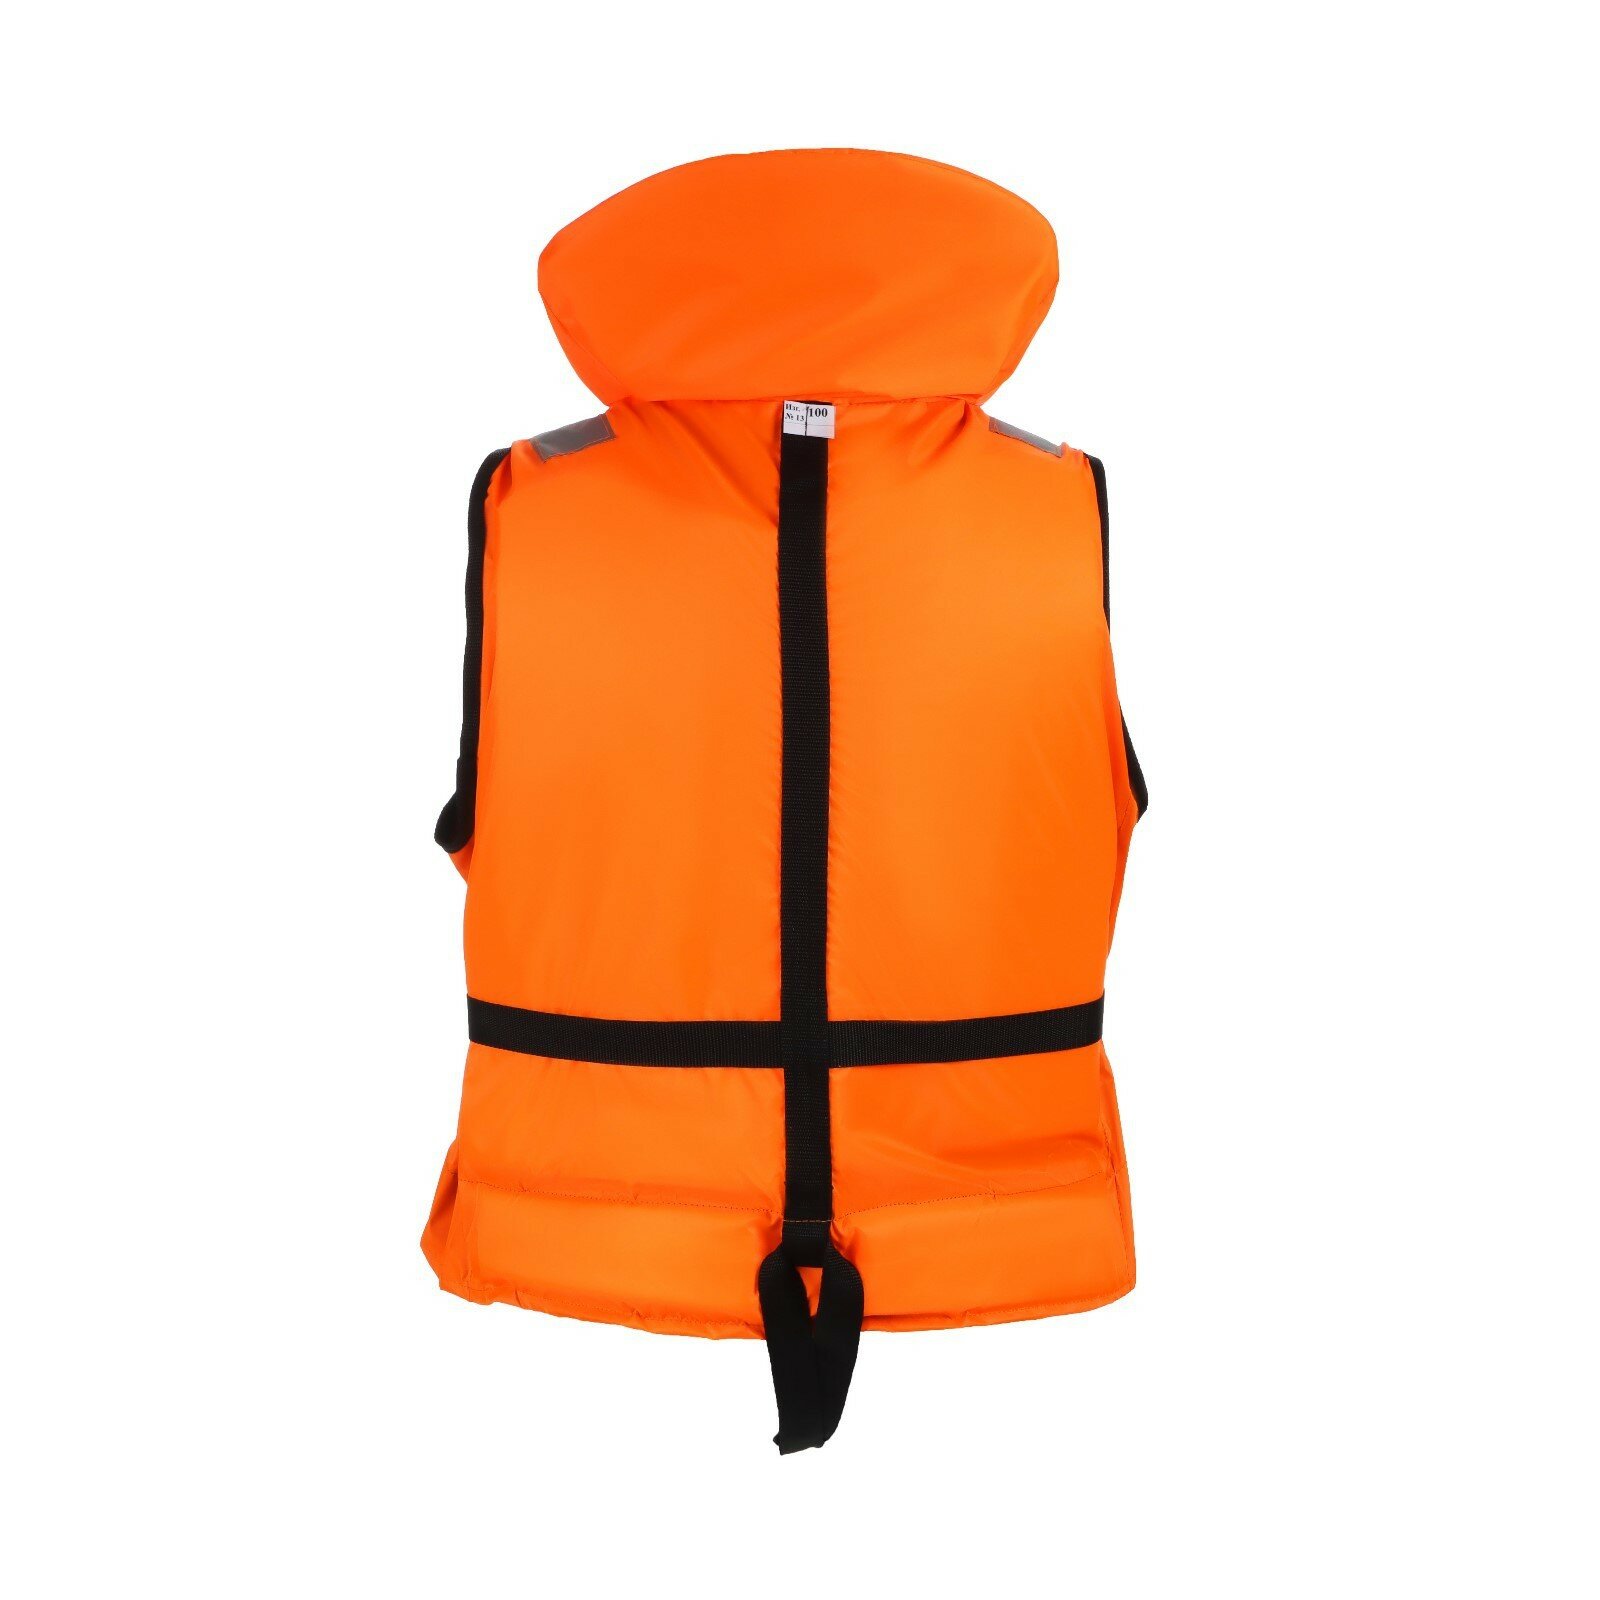 Спасательный жилет Comfort-termo COMFORT BOTSMAN 120-150+ кг